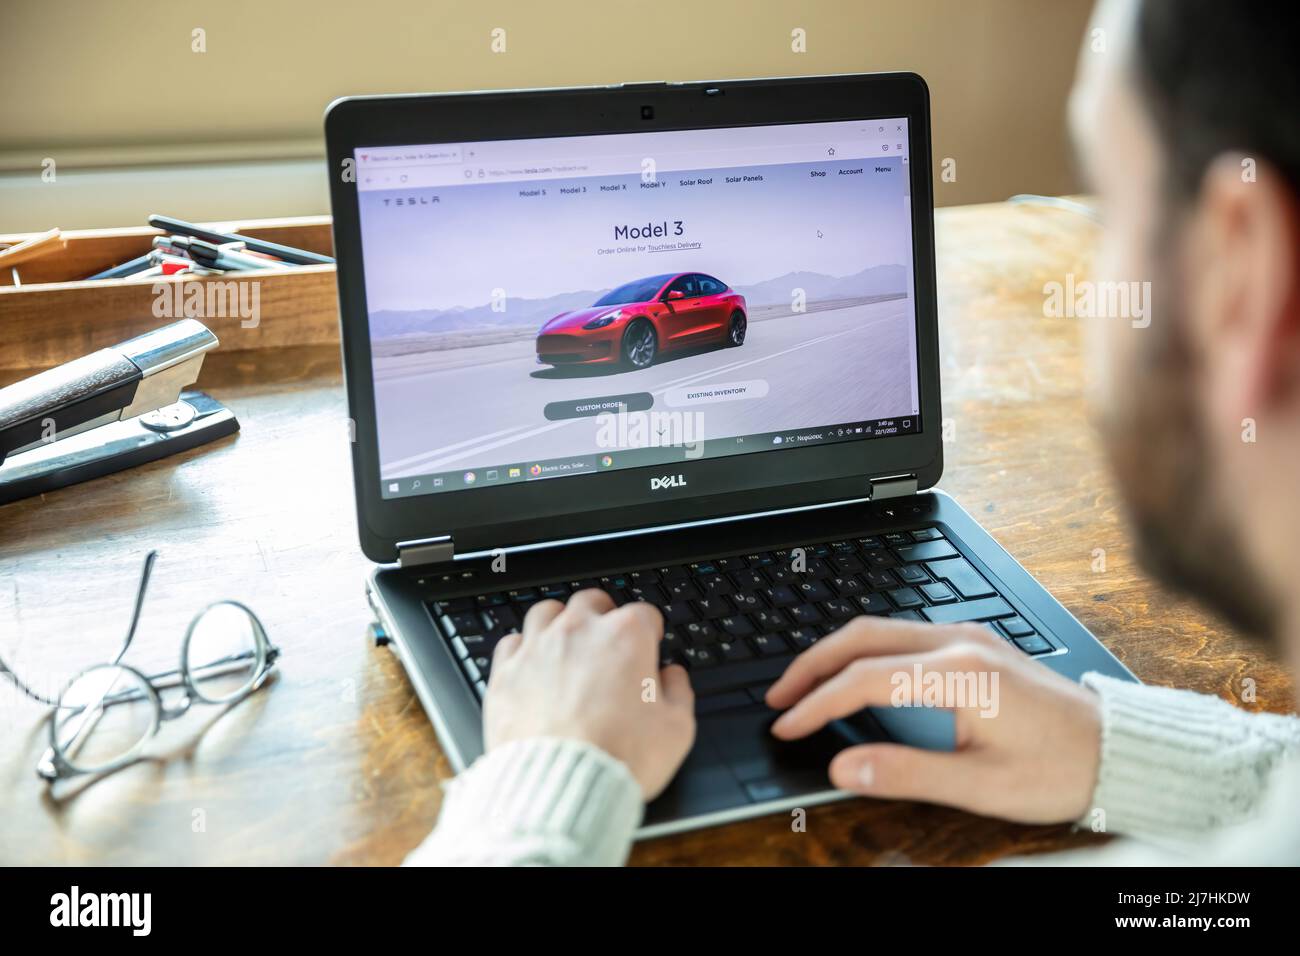 Griechenland, Athen, Januar 23 2022. TESLA FAHRZEUGAUSWAHL. Ad, online rot Tesla Modell 3 Elektro-Auto. PC auf dem Tisch, Hand auf der Tastatur Stockfoto